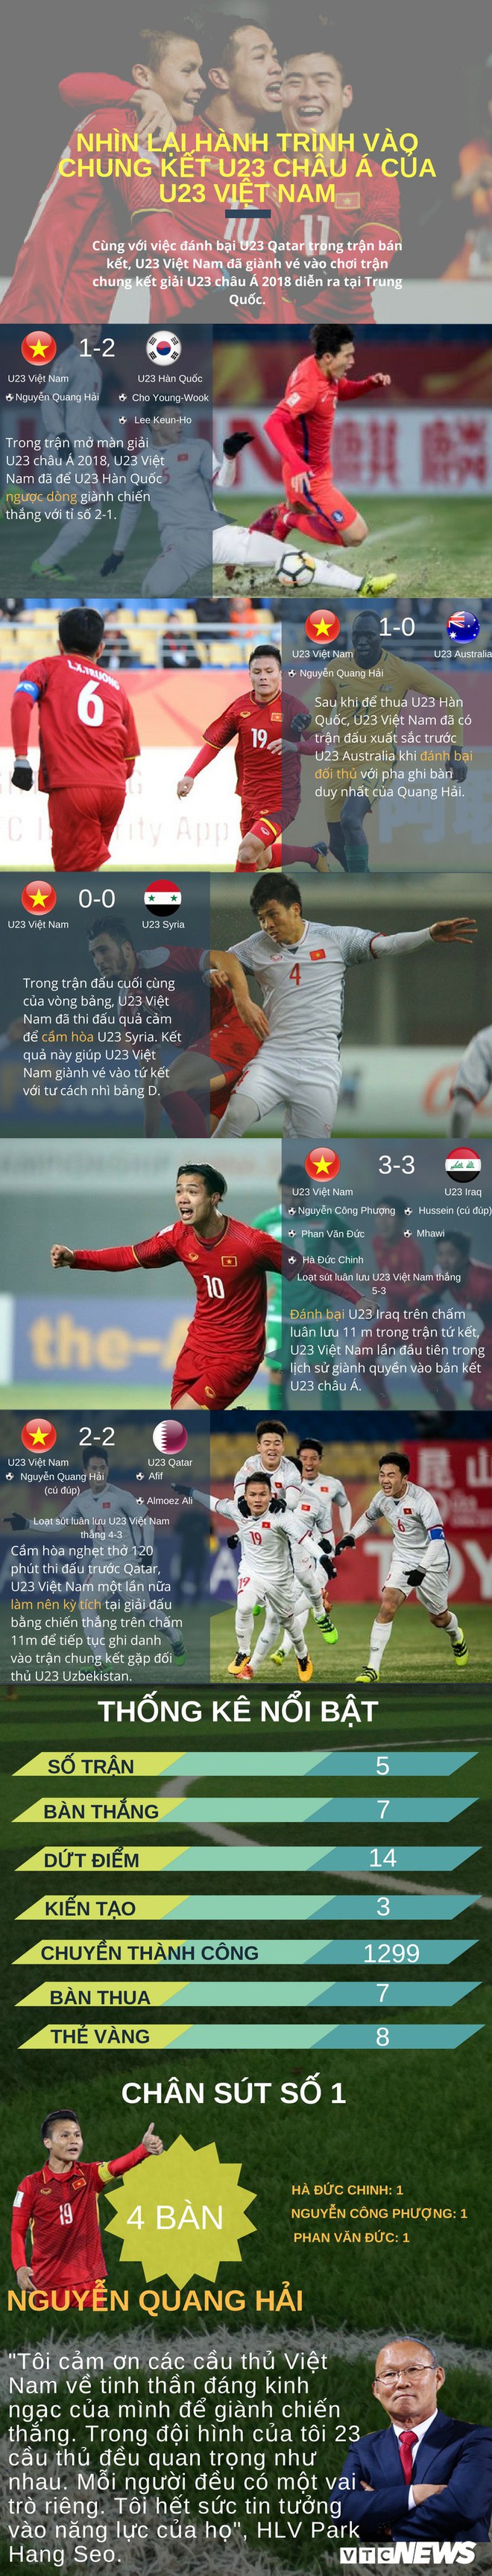 Infographic: Nhìn lại hành trình thần kỳ của U23 Việt Nam tại giải châu Á - Ảnh 1.